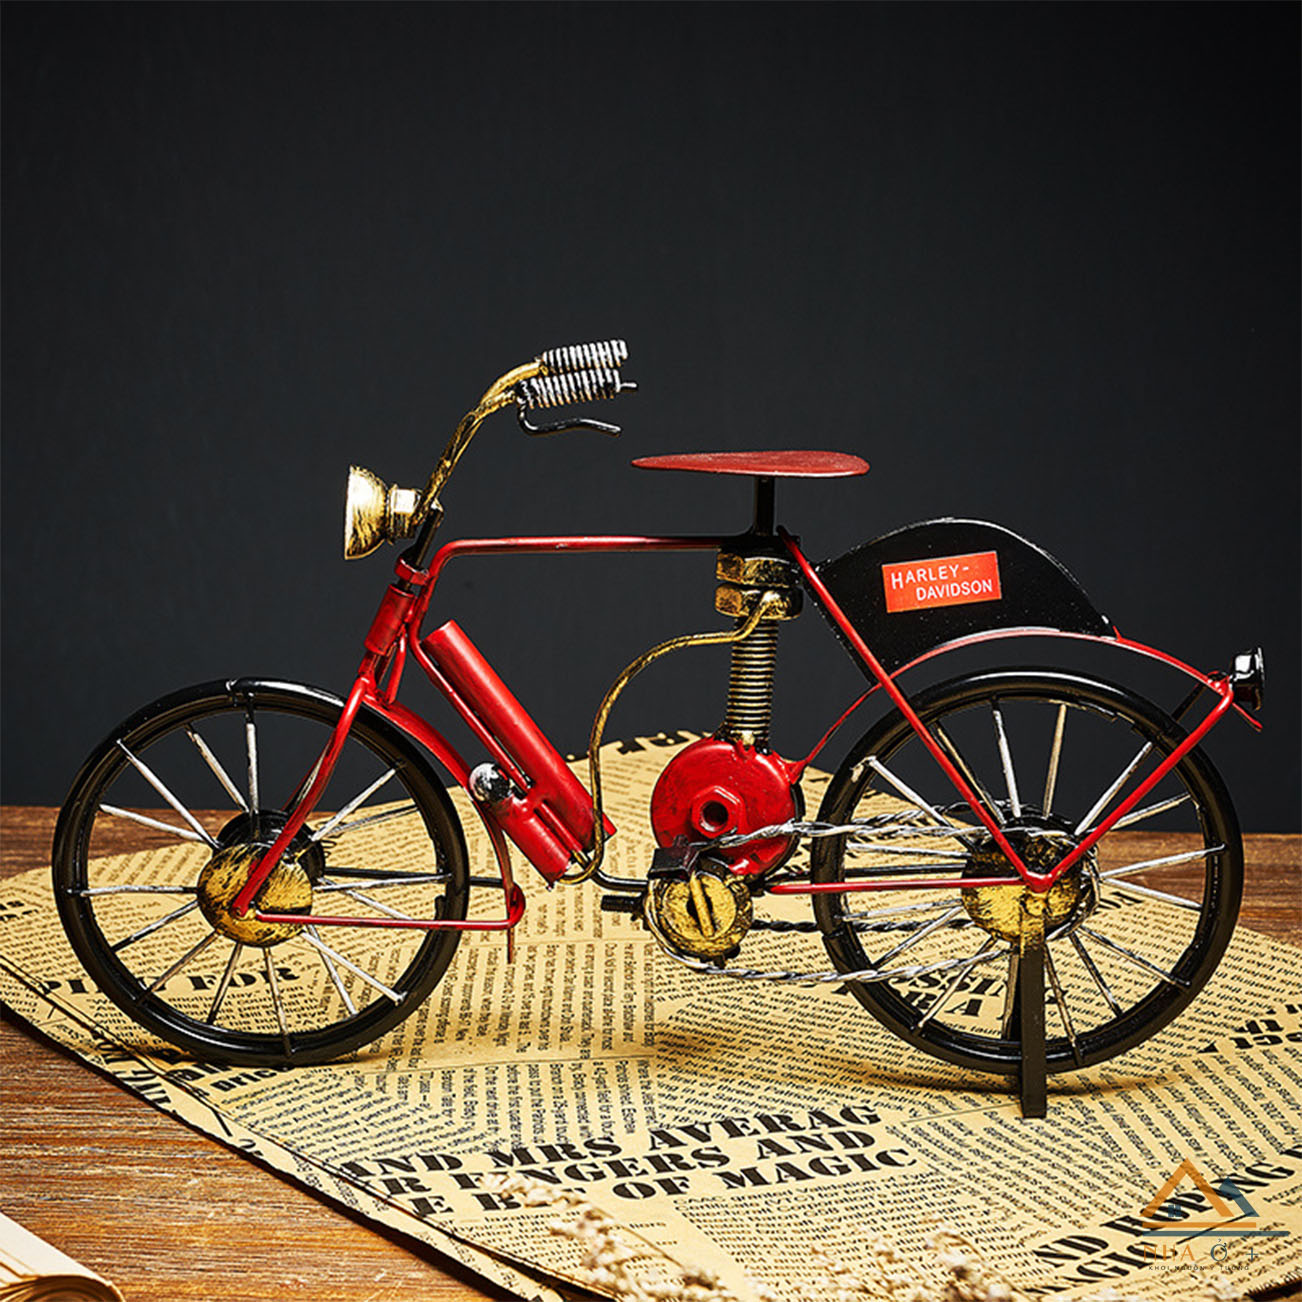 Mô hình xe đạp với pedan và xích sắt hoạt động như thật  GadgetVN